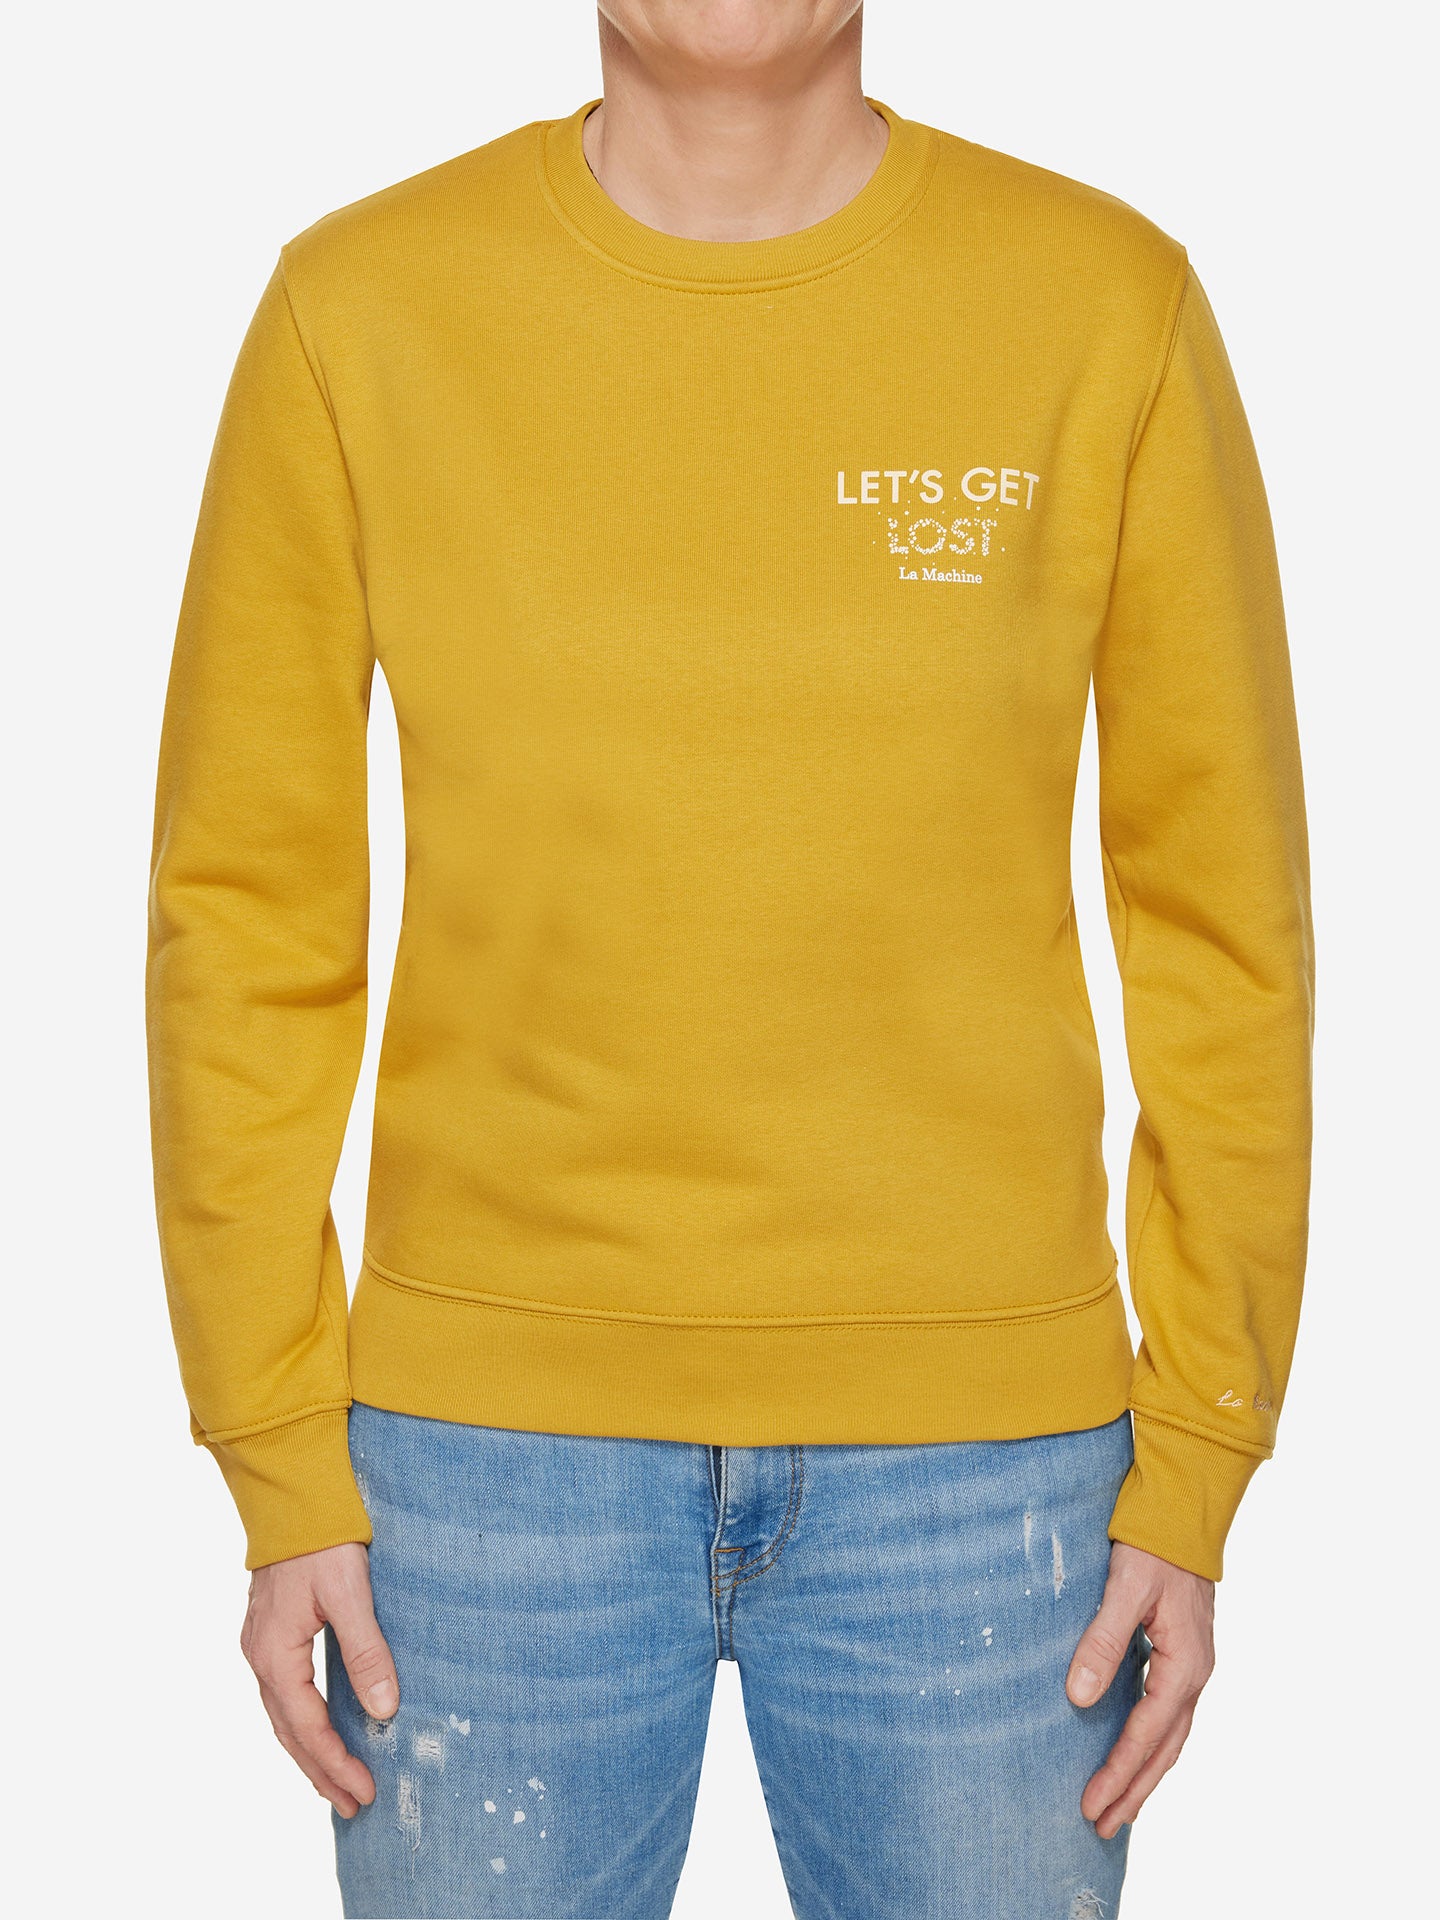 Let’s Get Lost - Women's Sweatshirt